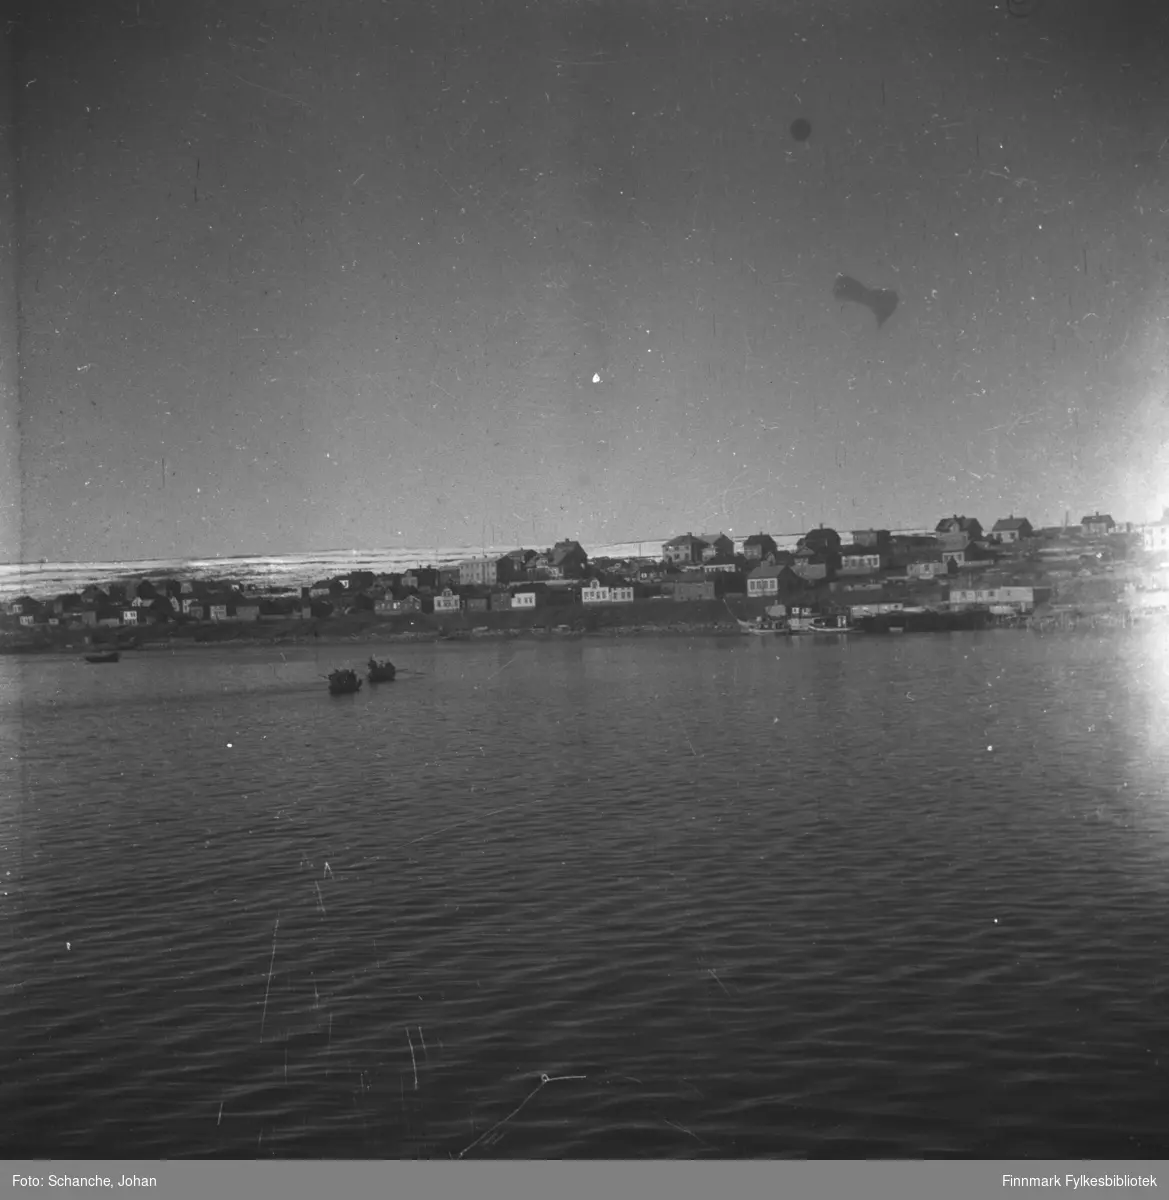 Indrebyen i Vadsø fotografert fra havet. To båter ror mot byen. Ruiner bland byggninger. Fjellen bak byen er delvis dekt av snø.